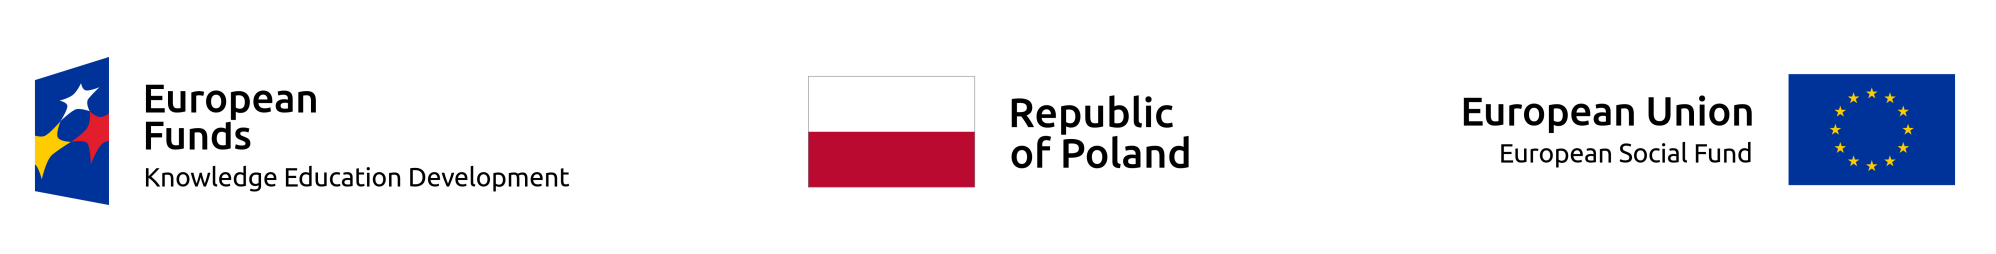 Logo European Funds - Republic of Poland - European Union